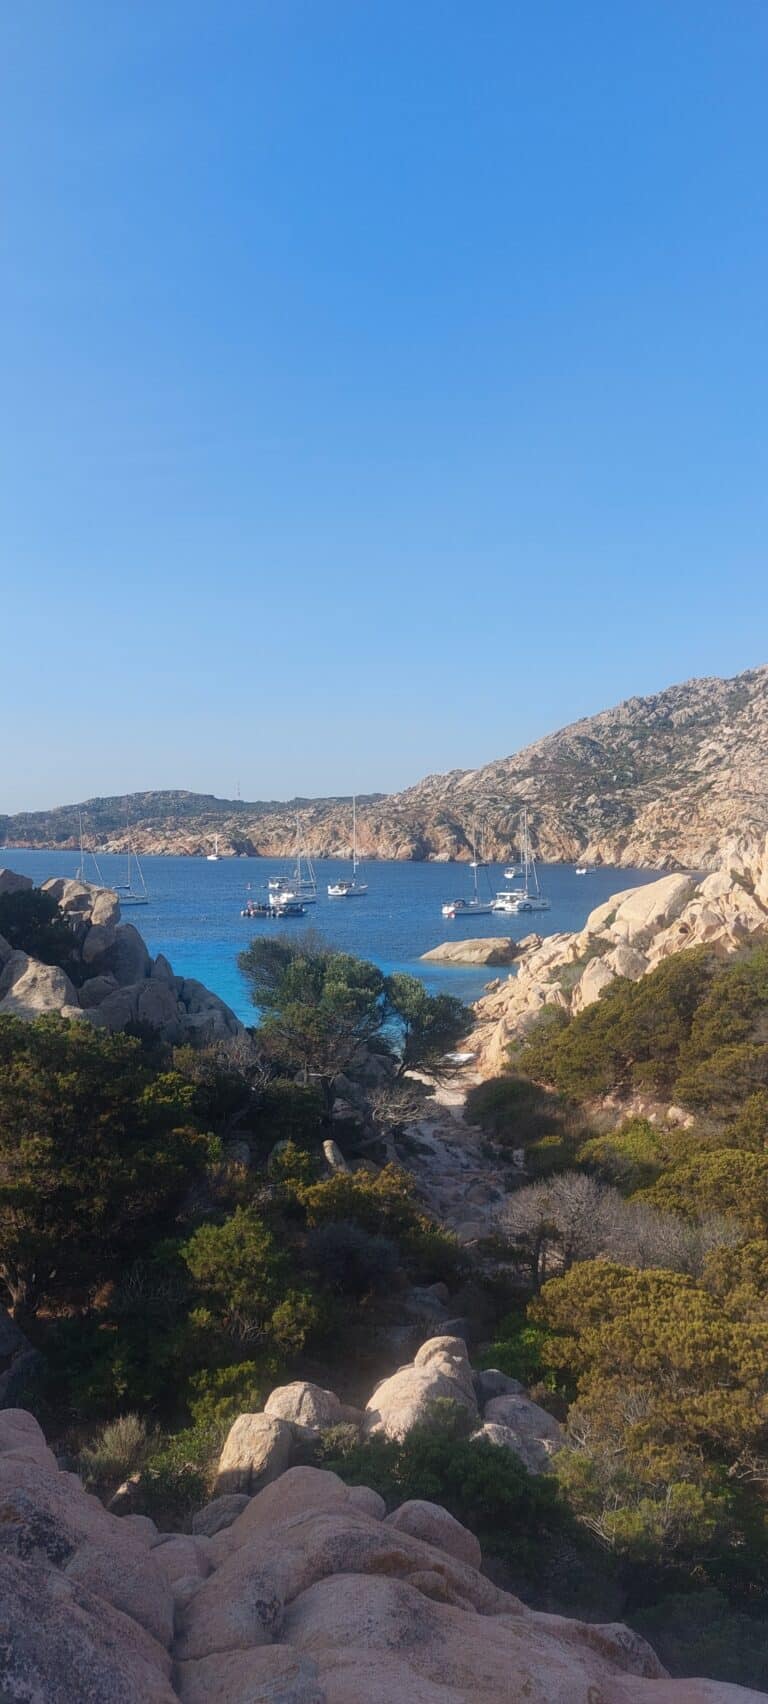 Eine malerische Küstenszene auf Sardinien zeigt eine felsige Küste, die mit Grün bedeckt ist und in ein klares, blaues Meer mündet. Mehrere Segelboote liegen im Wasser vor Anker und im Hintergrund erheben sich Hügel mit spärlicher Vegetation unter einem klaren, strahlend blauen Himmel – perfekt für einen Segelurlaub.